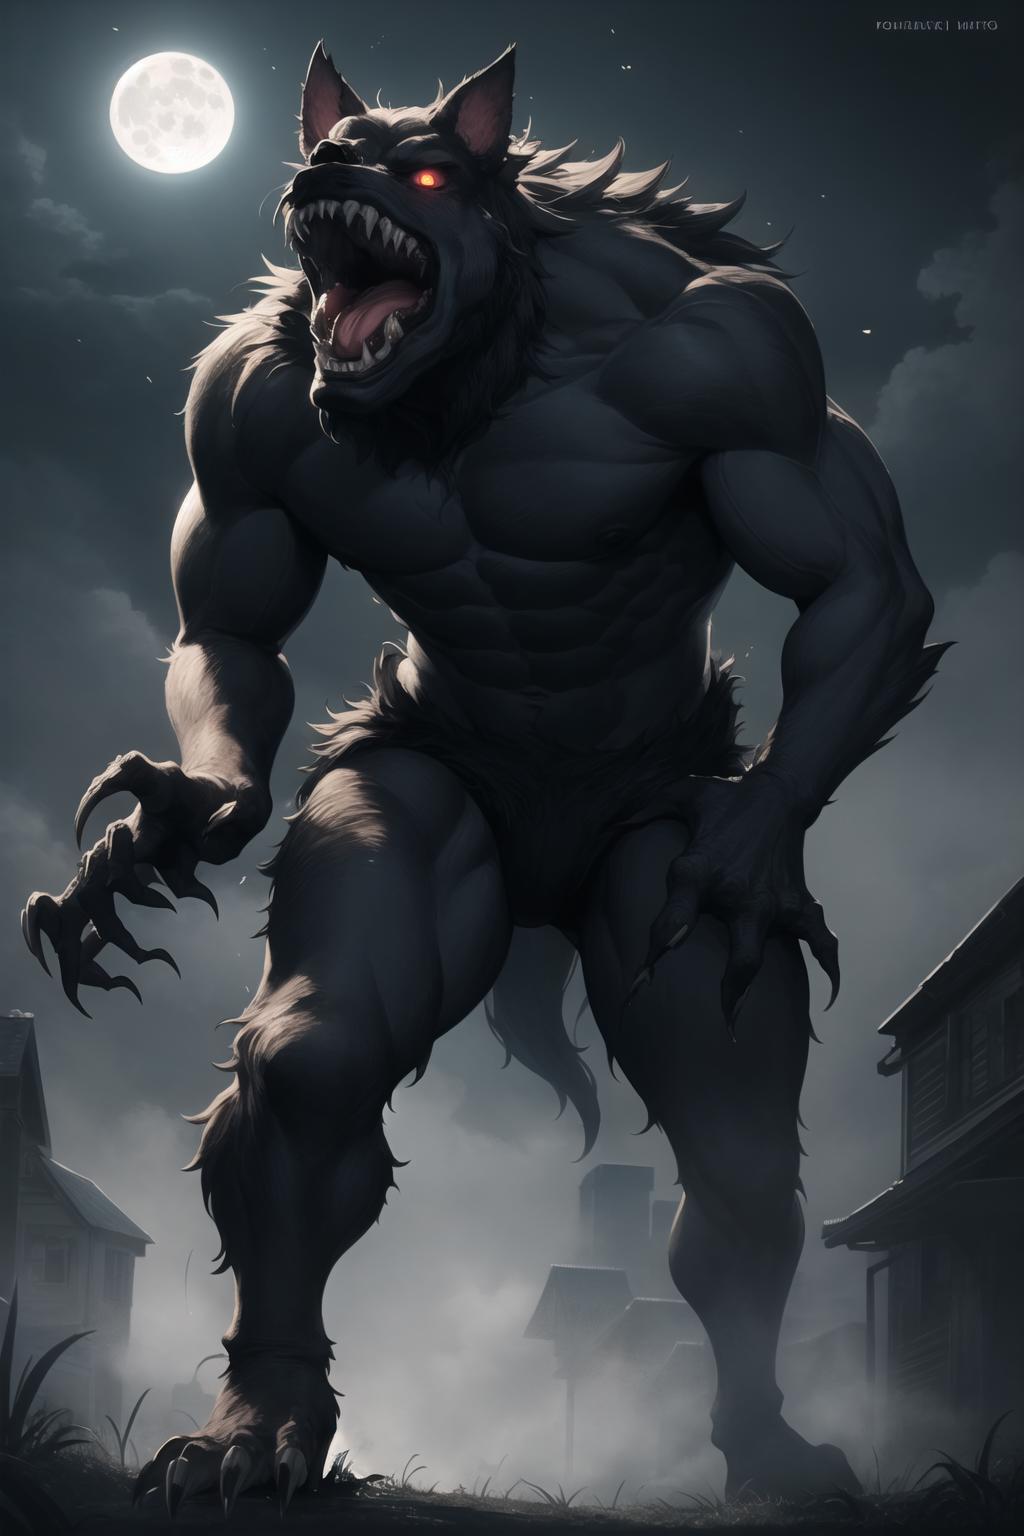 Werewolf image by psoft